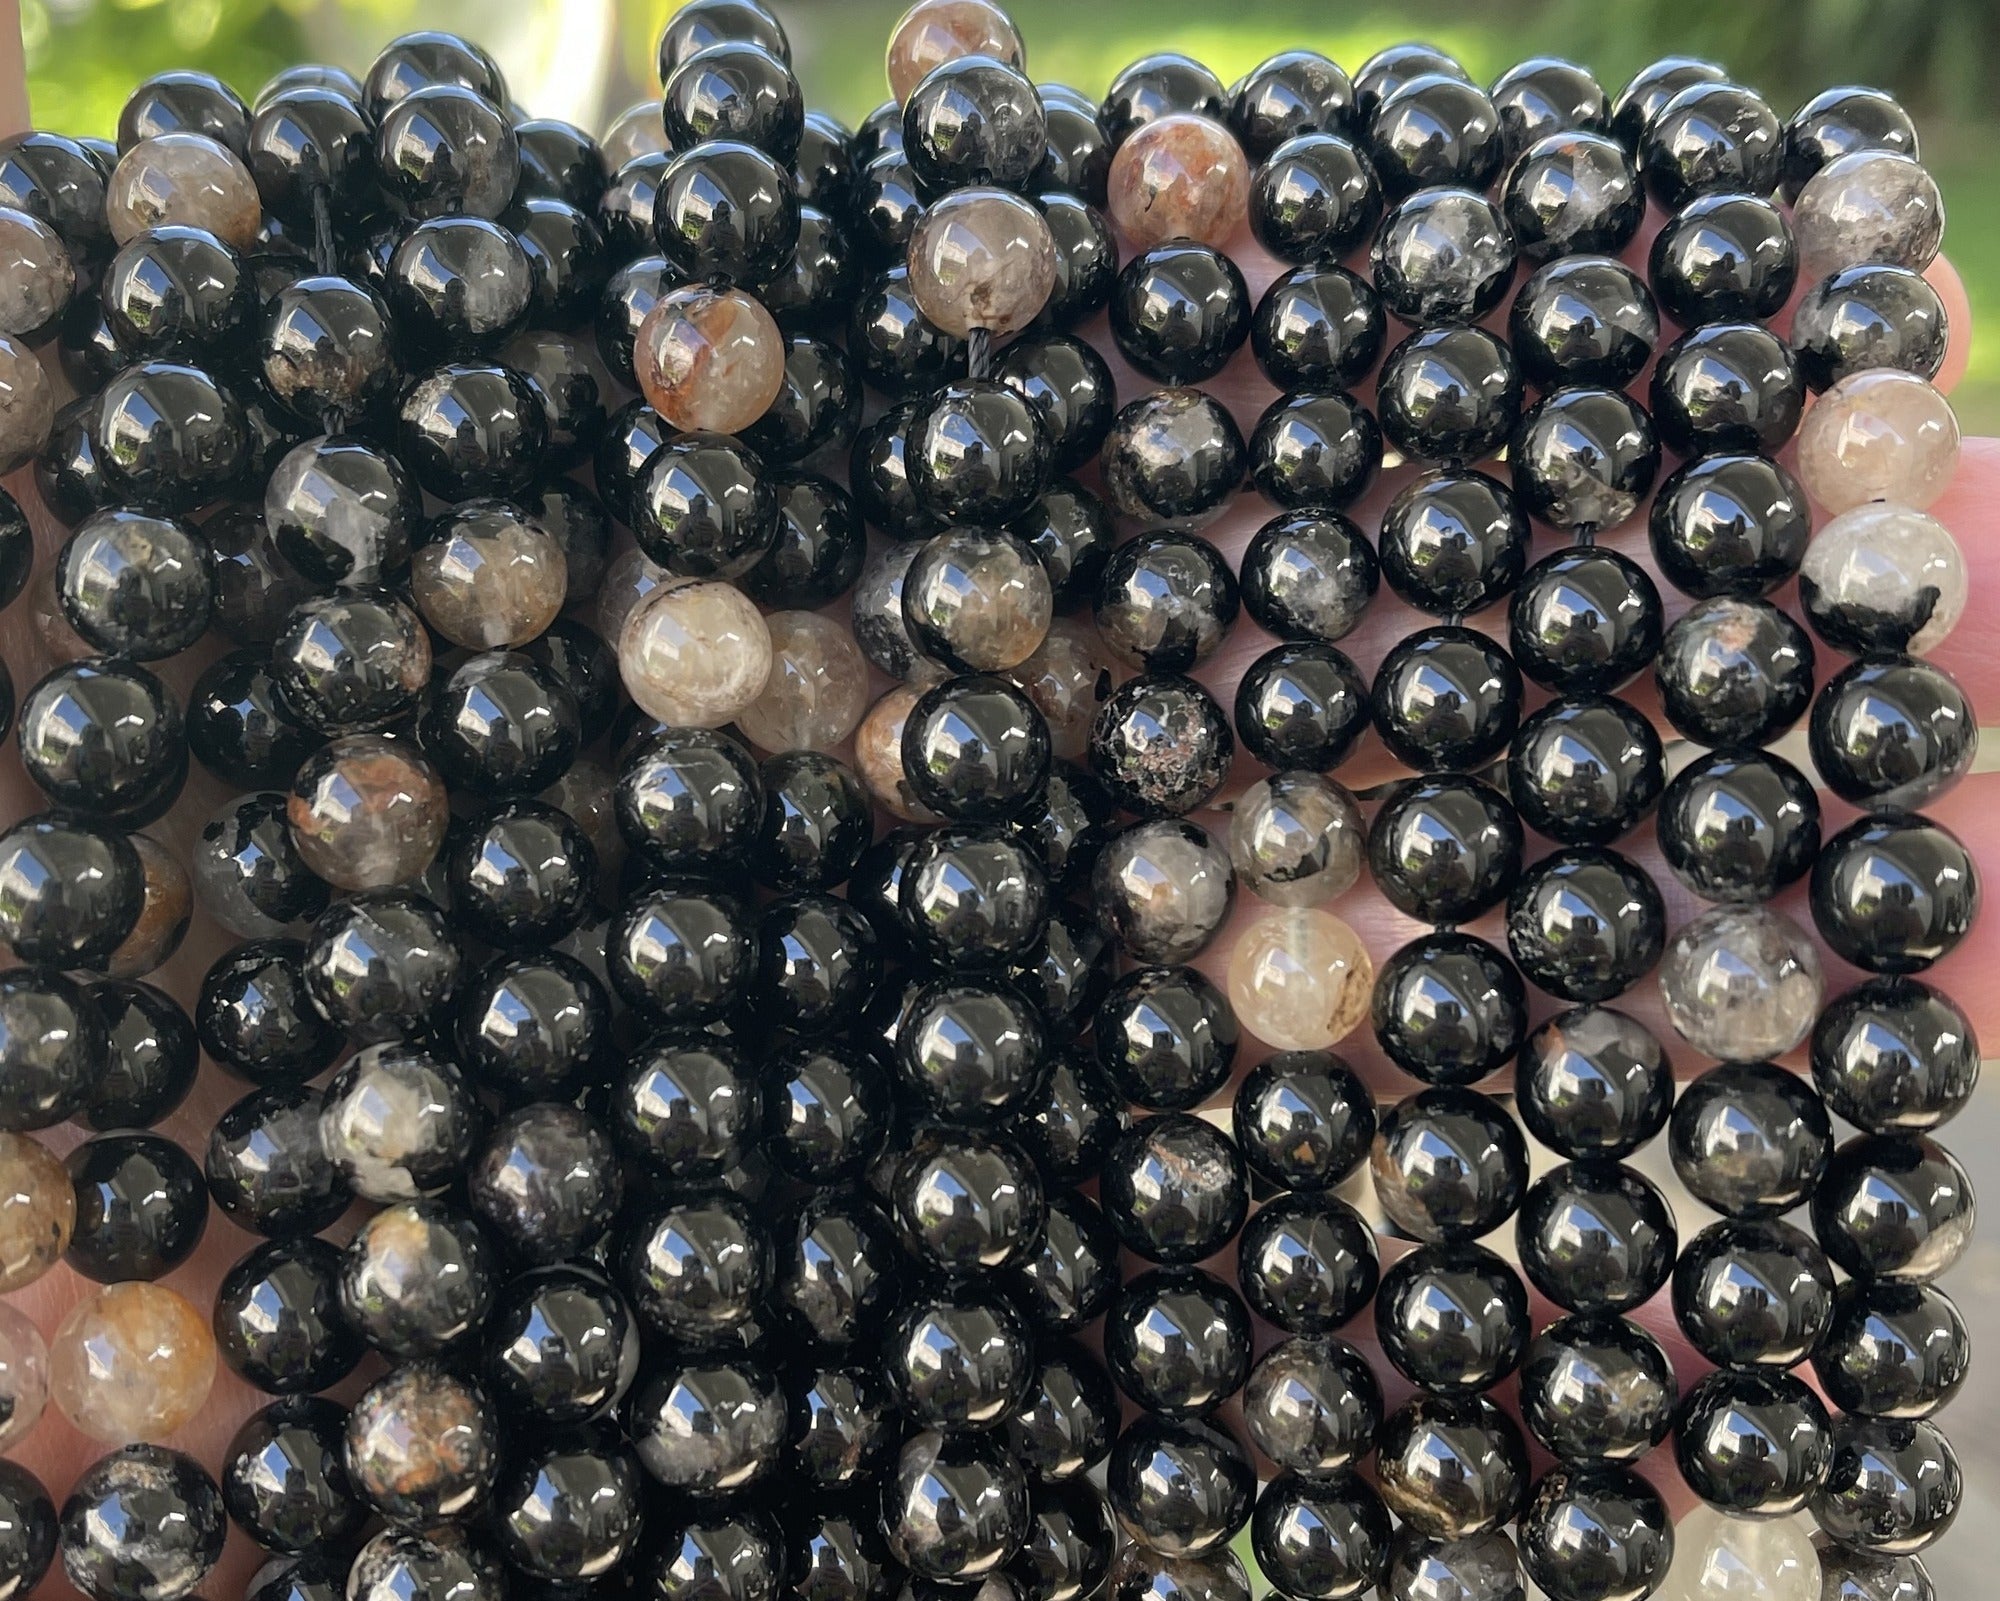 Black Tourmaline in Quartz and Iron Matrix 8mm round natural gemstone beads 15.5" strand